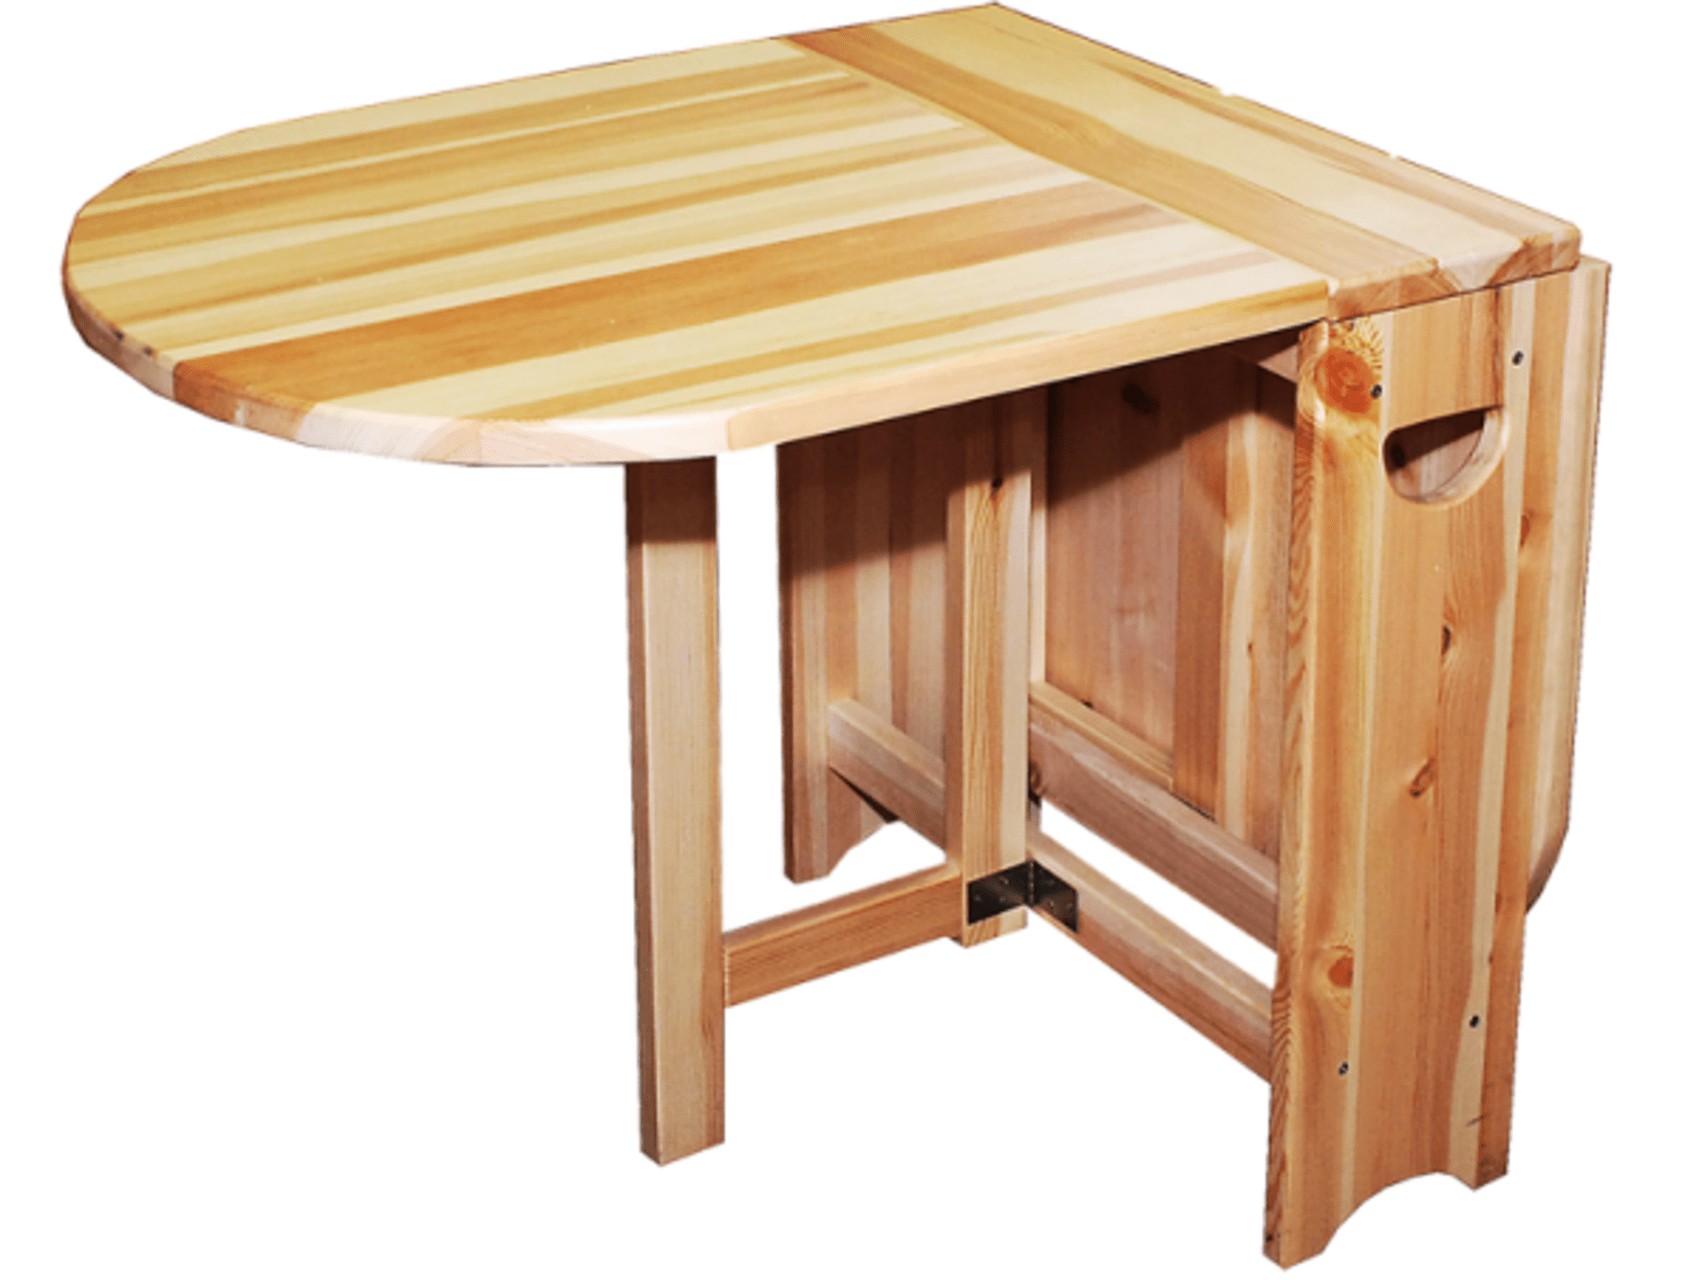 Как изготовить своими руками стол из досок для дома, рекомендации 15 - ДиванеТТо